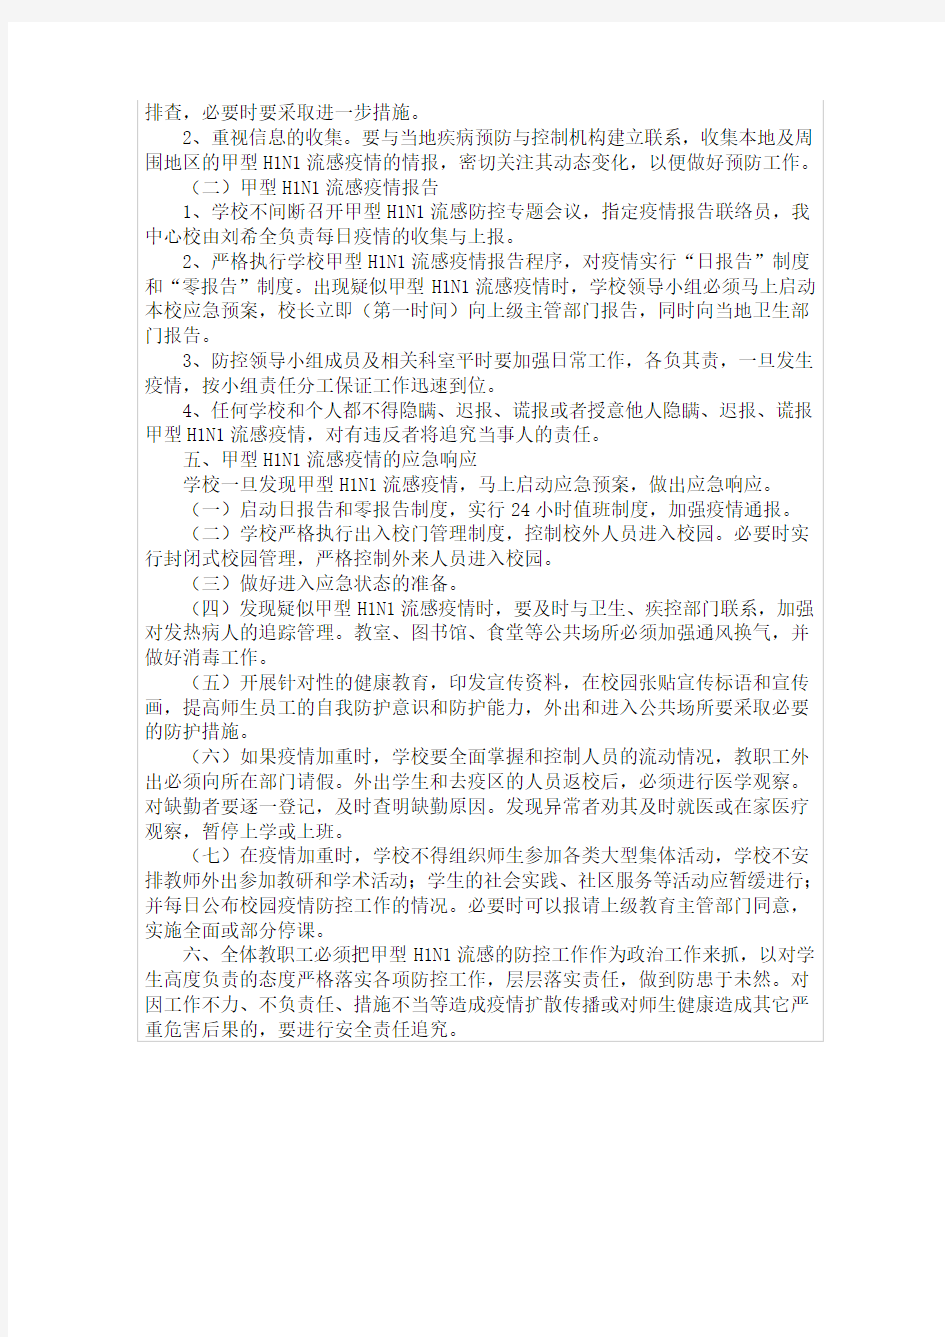 大王镇大王学校甲流感防控应急预案